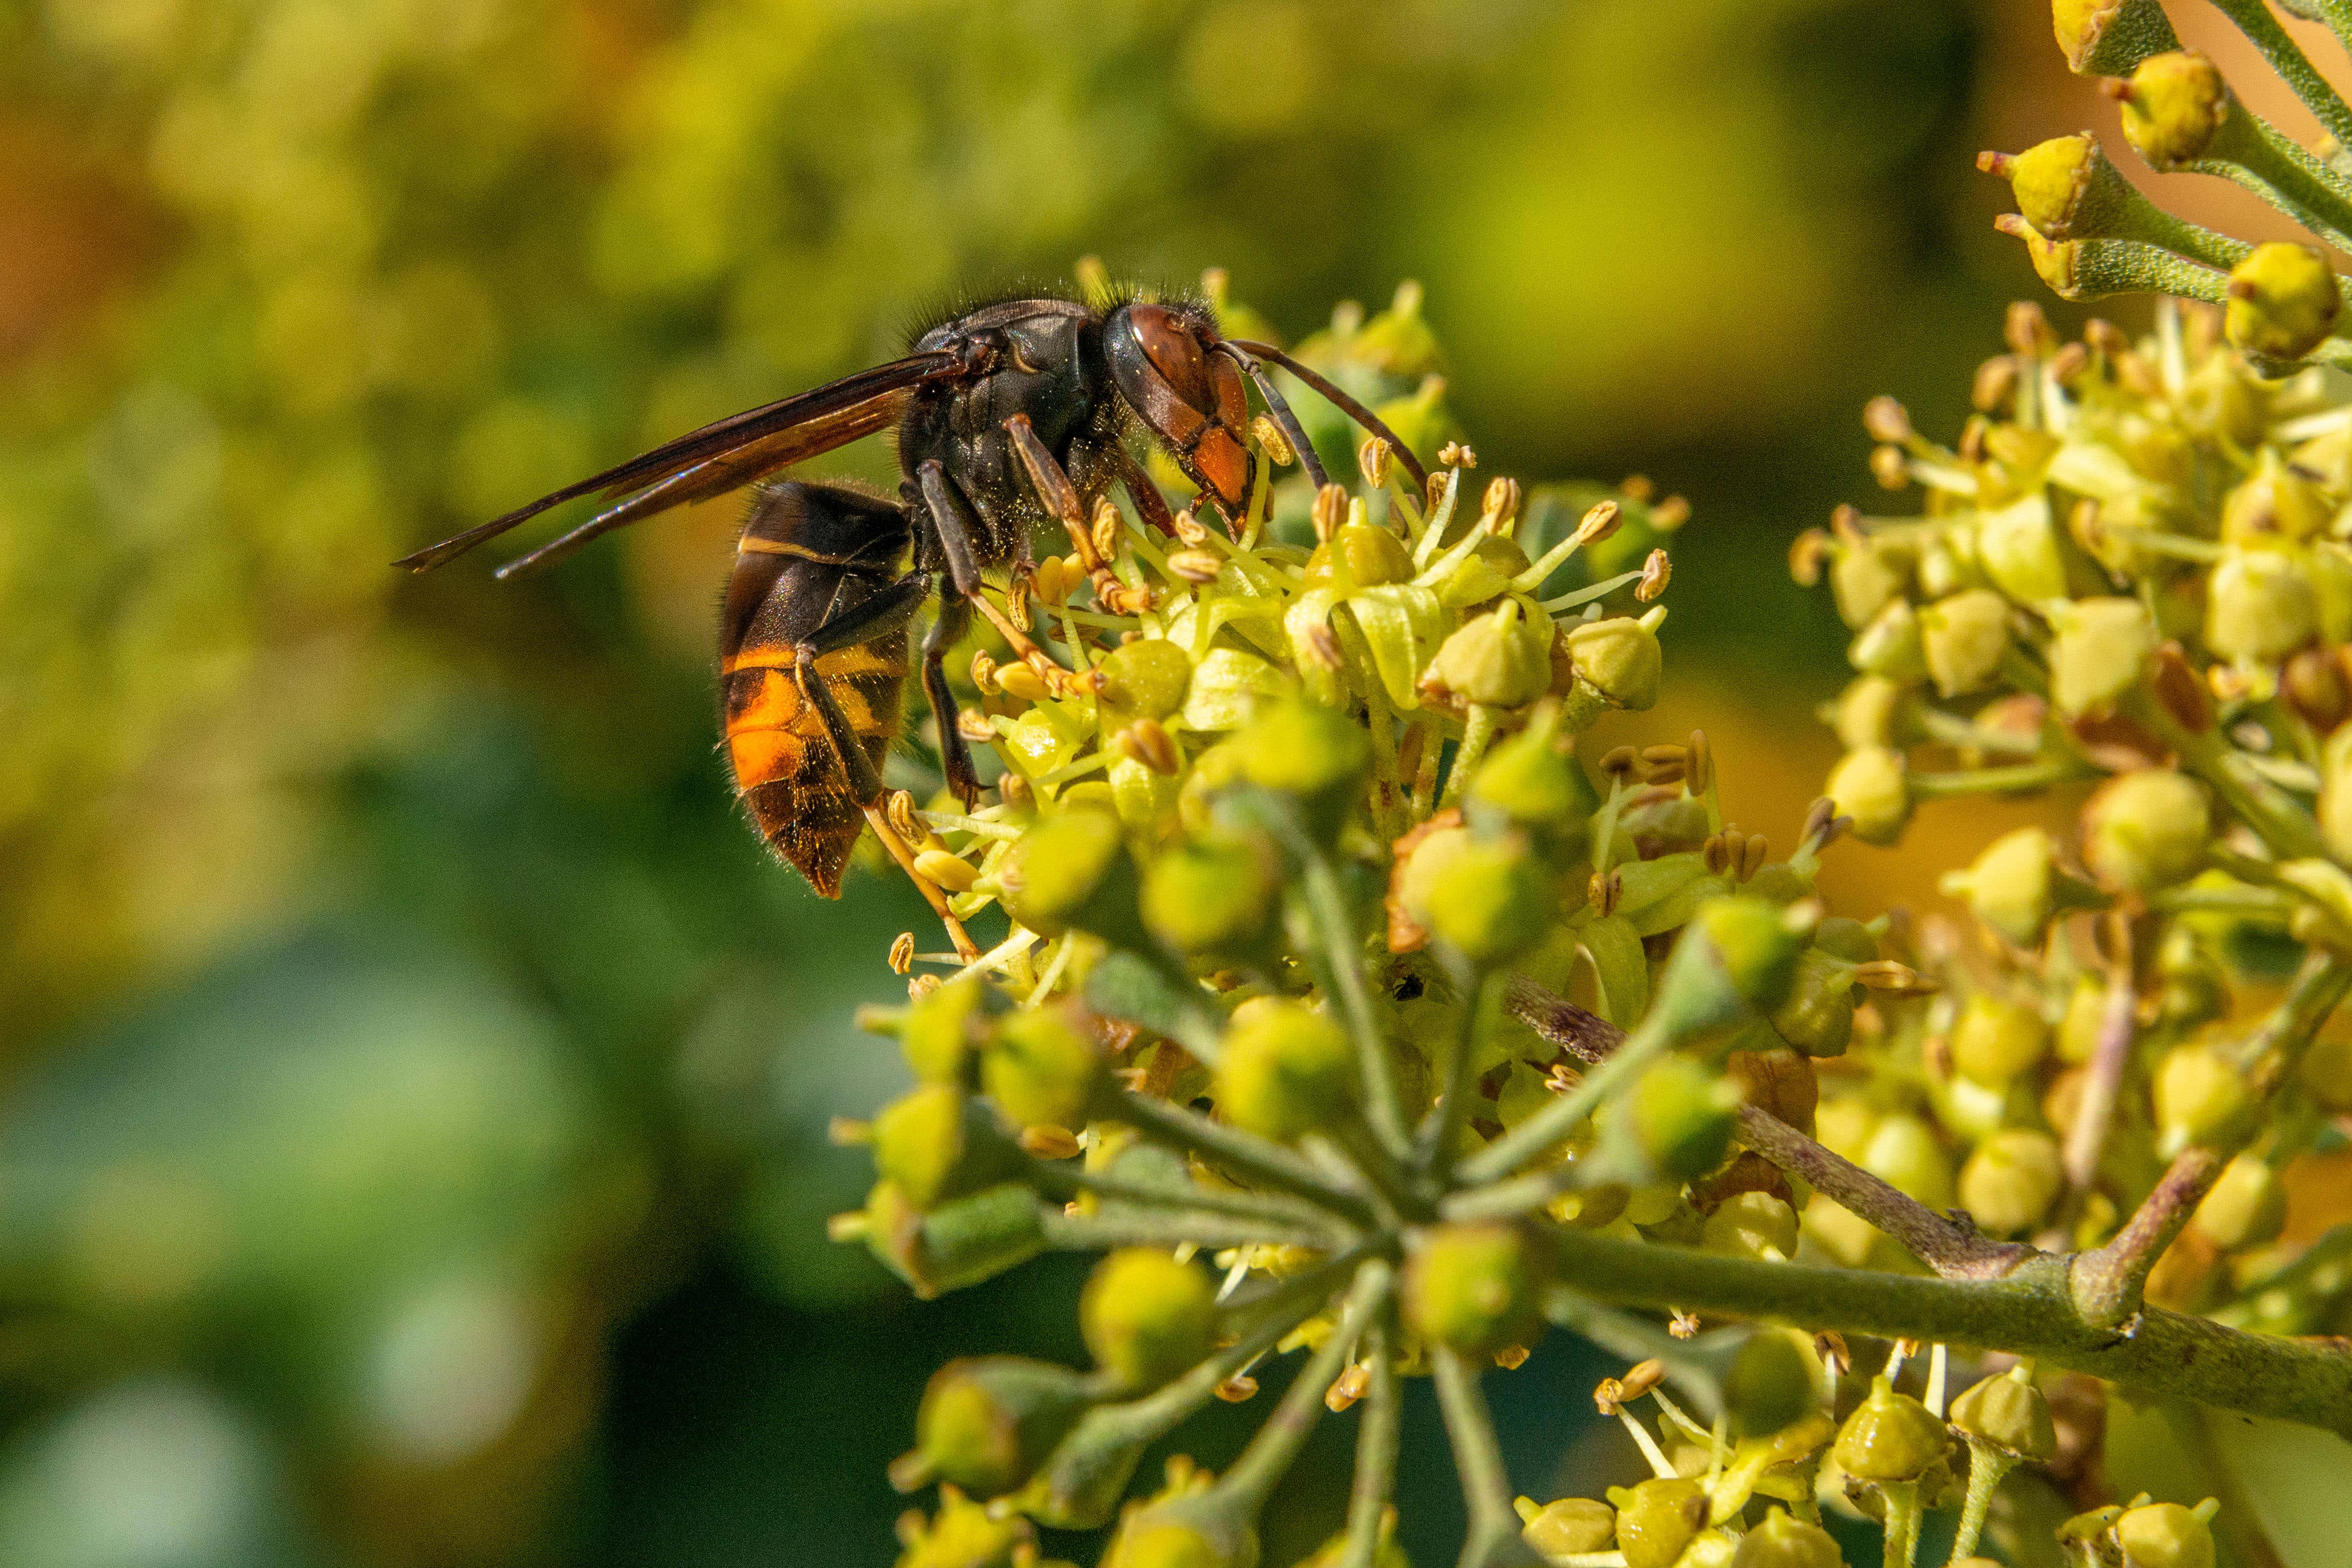 An Asian hornet taking nectar from an ivy flower head